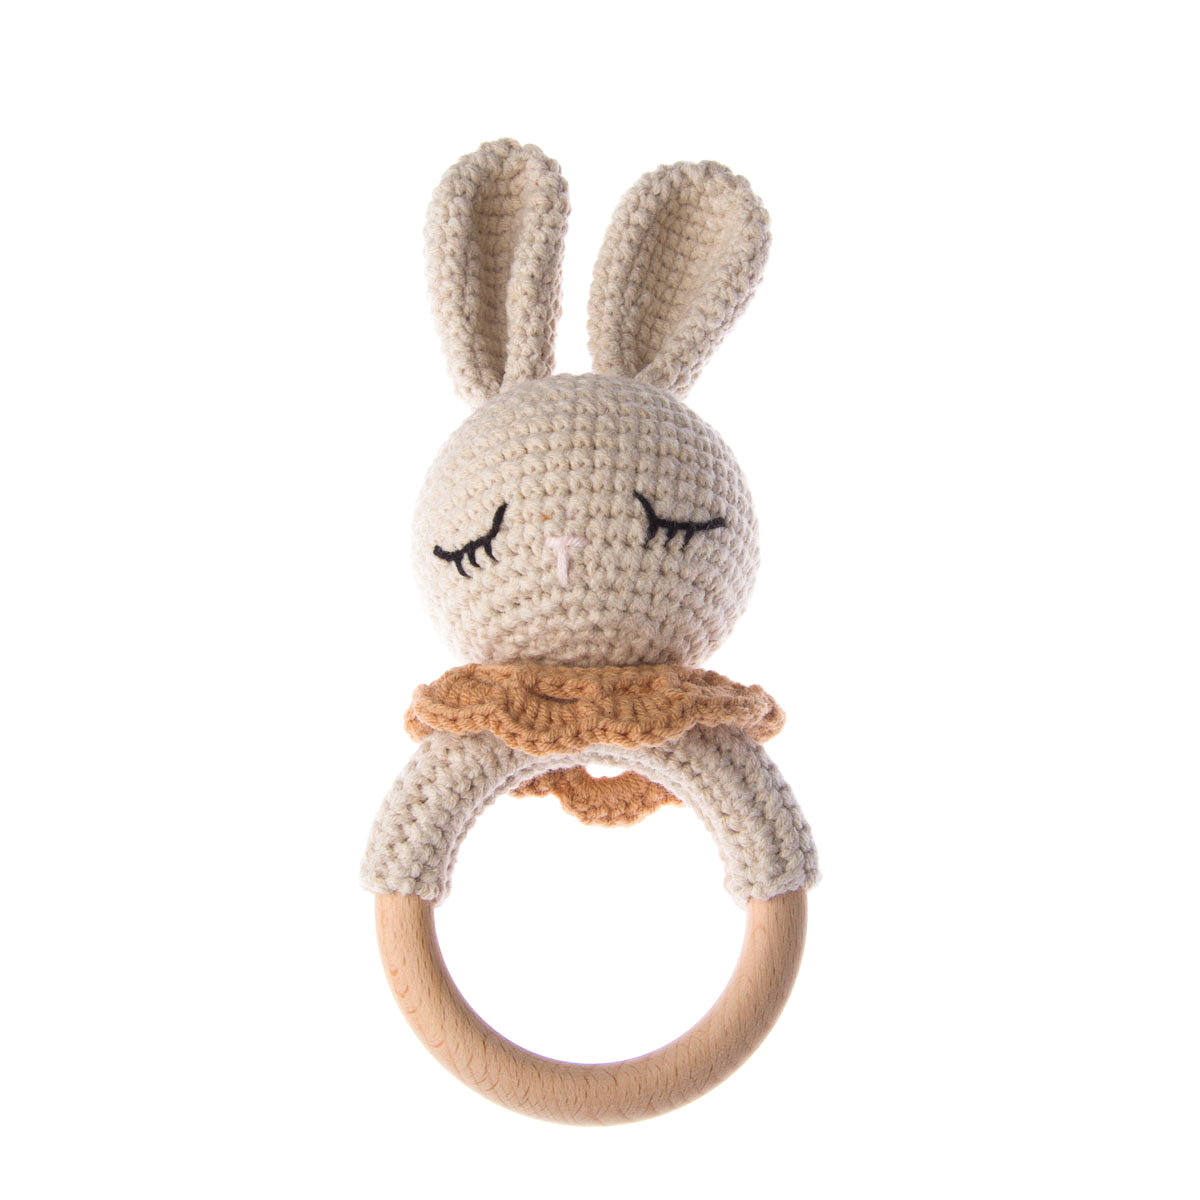 Handmade Sleeping Bunny Crochet Rattle toys Jabaloo